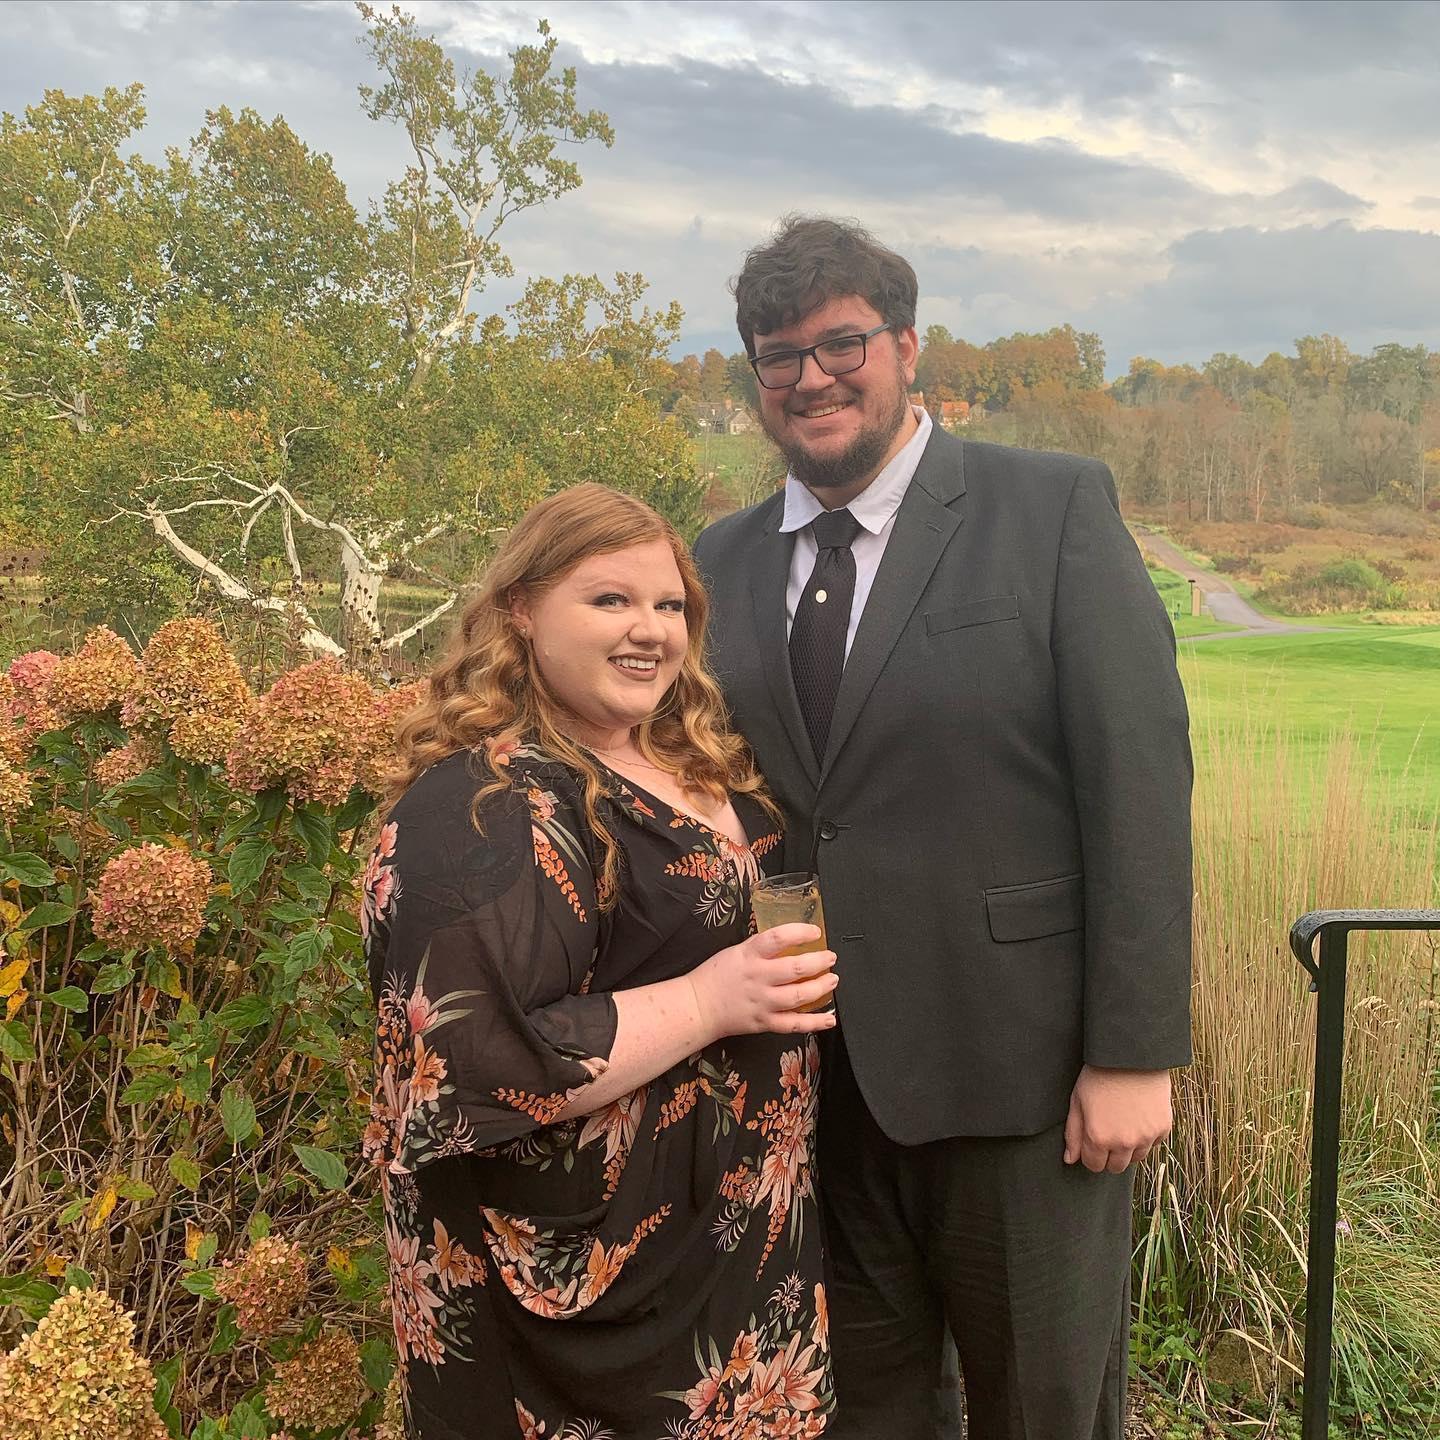 Evan and Colleen’s Wedding, October 23, 2021